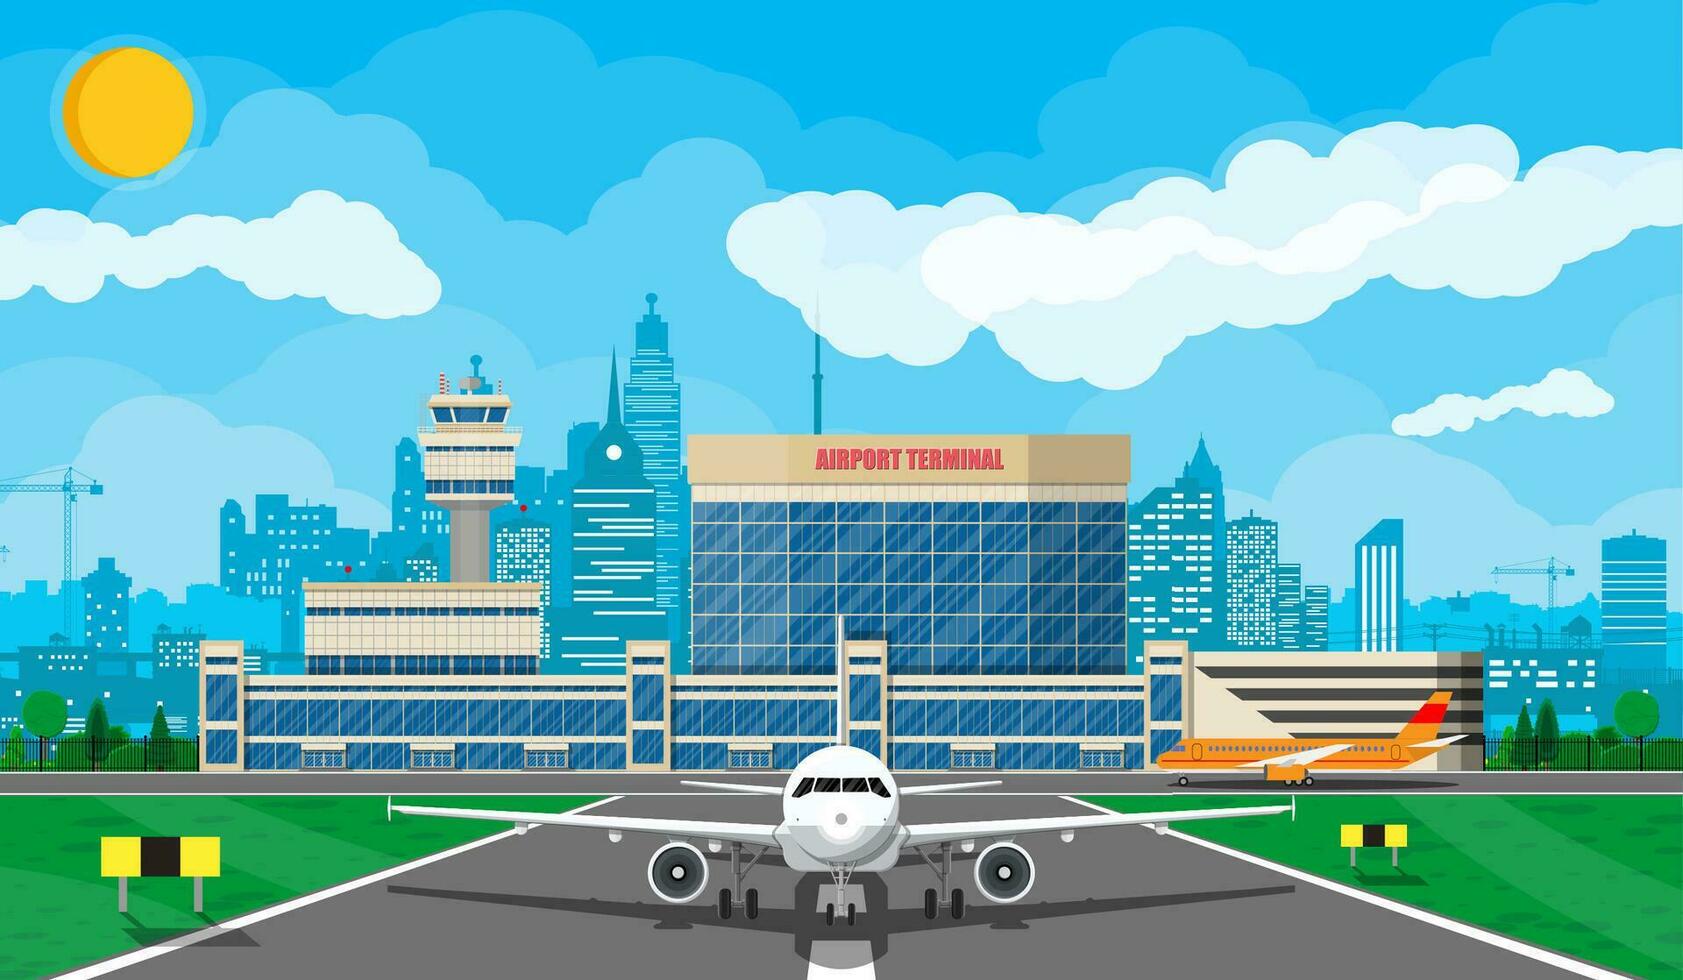 plan innan ta av. flygplats kontrollera torn, terminal byggnad och parkering område. stadsbild. himmel med moln och Sol. vektor illustration i platt stil